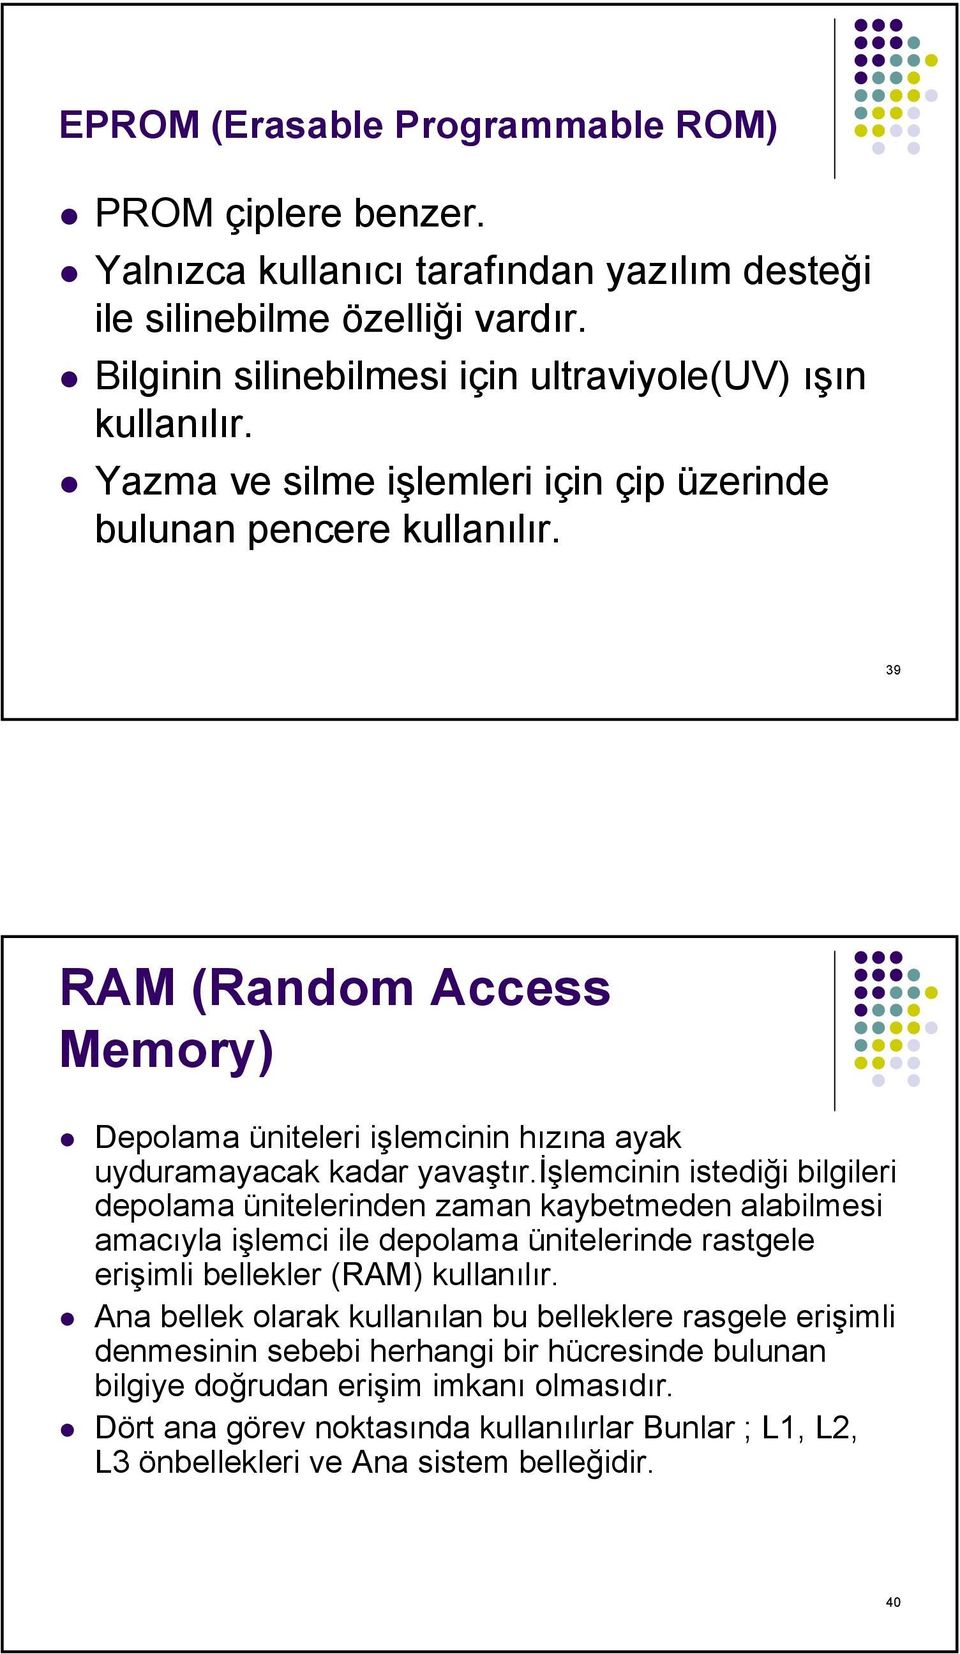 işlemcinin istediği bilgileri depolama ünitelerinden zaman kaybetmeden alabilmesi amacıyla işlemci ile depolama ünitelerinde rastgele erişimli bellekler (RAM) kullanılır.